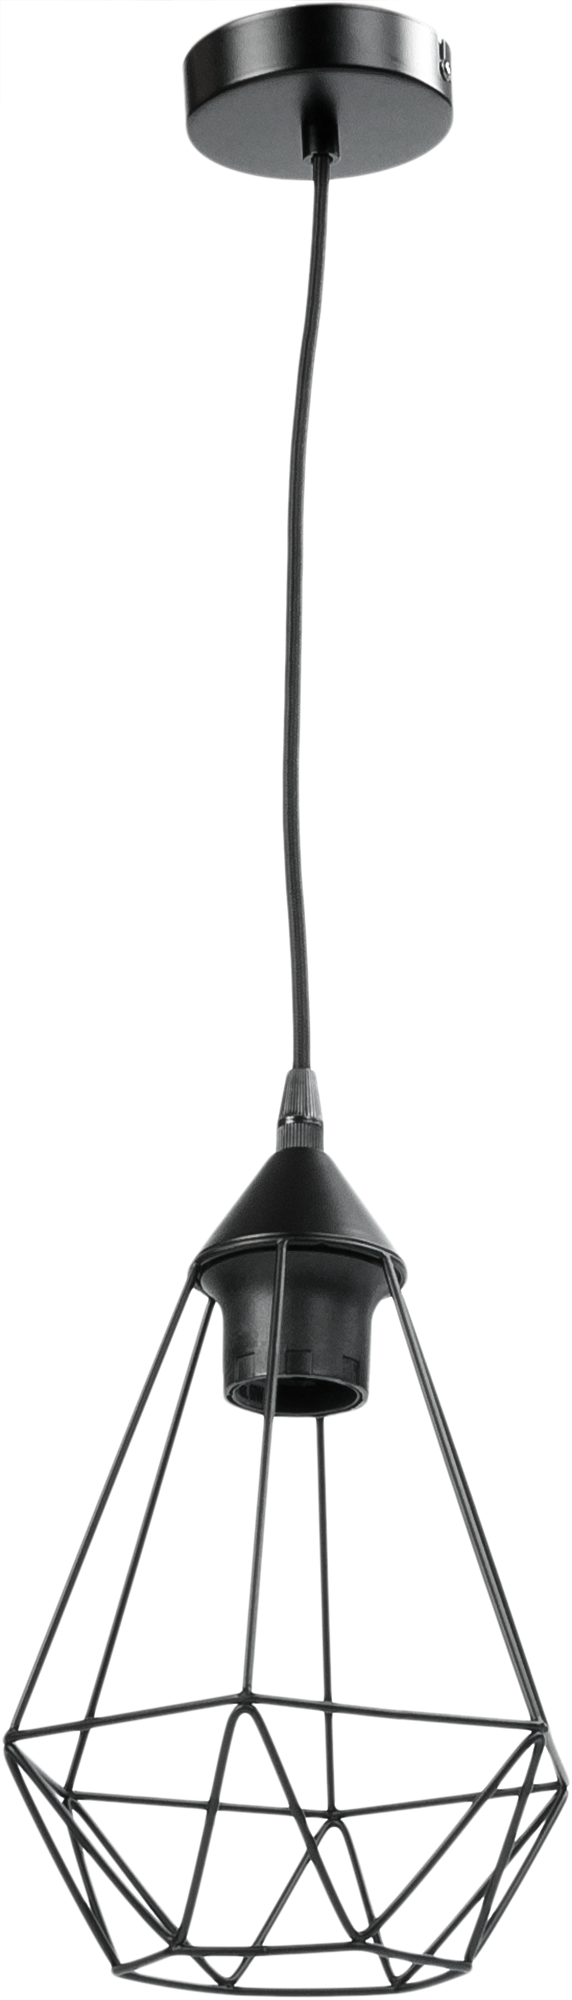 Светильник подвесной Inspire Byron 1 лампа E27Х60 Вт диаметр 16 см металл цвет чёрный